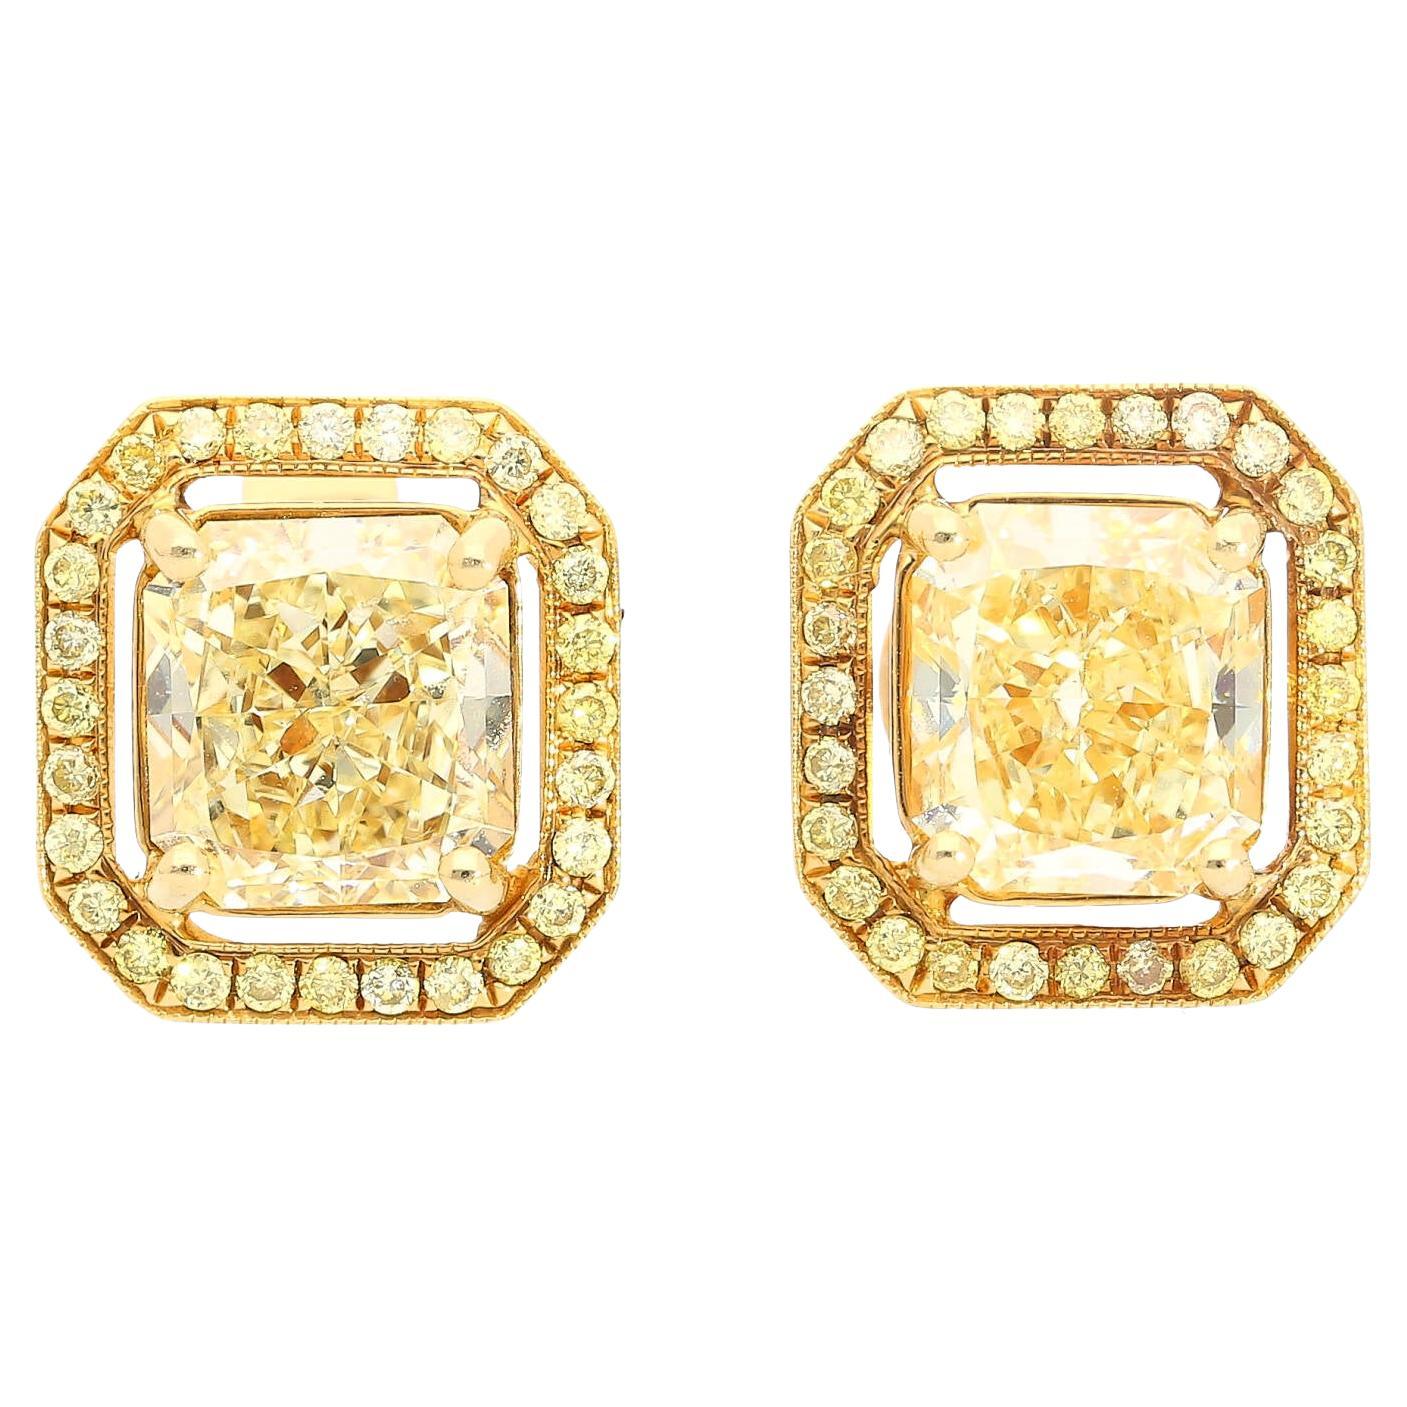 GIA Certified 3 Carat Fancy Light Yellow Diamond Radiant Cut Stud Earrings For Sale